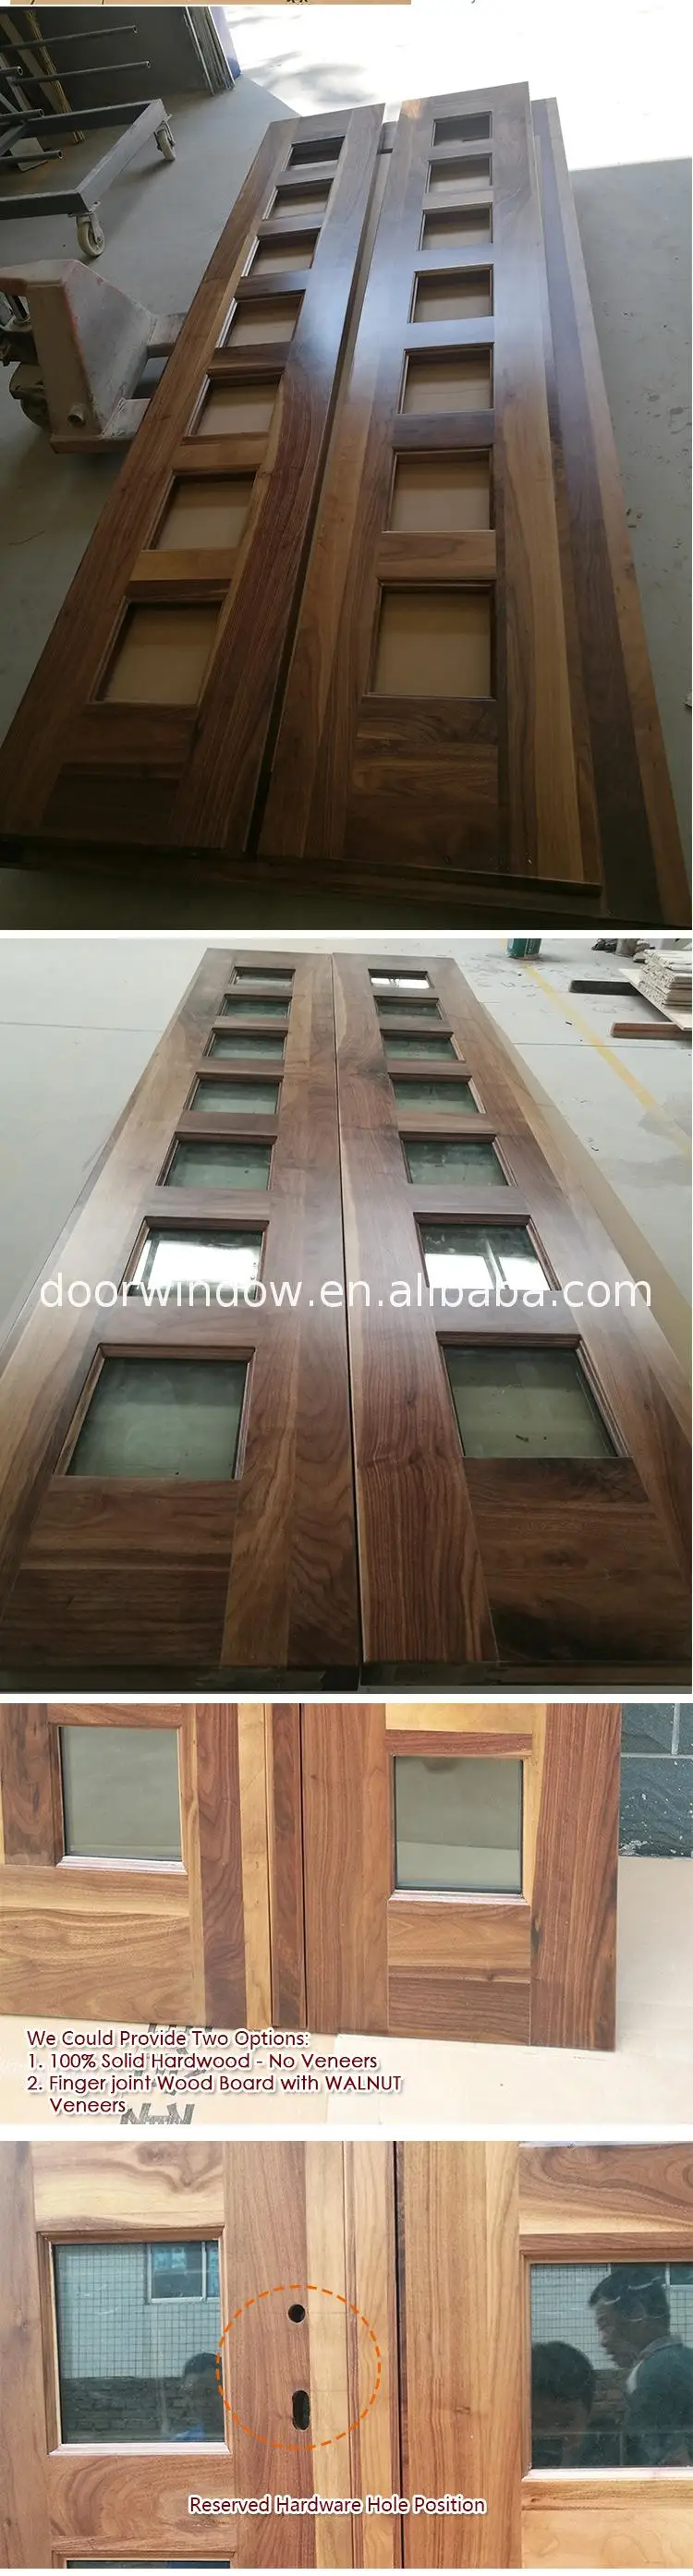 2017 new products italian design wooden doors front wood double door designs exterior